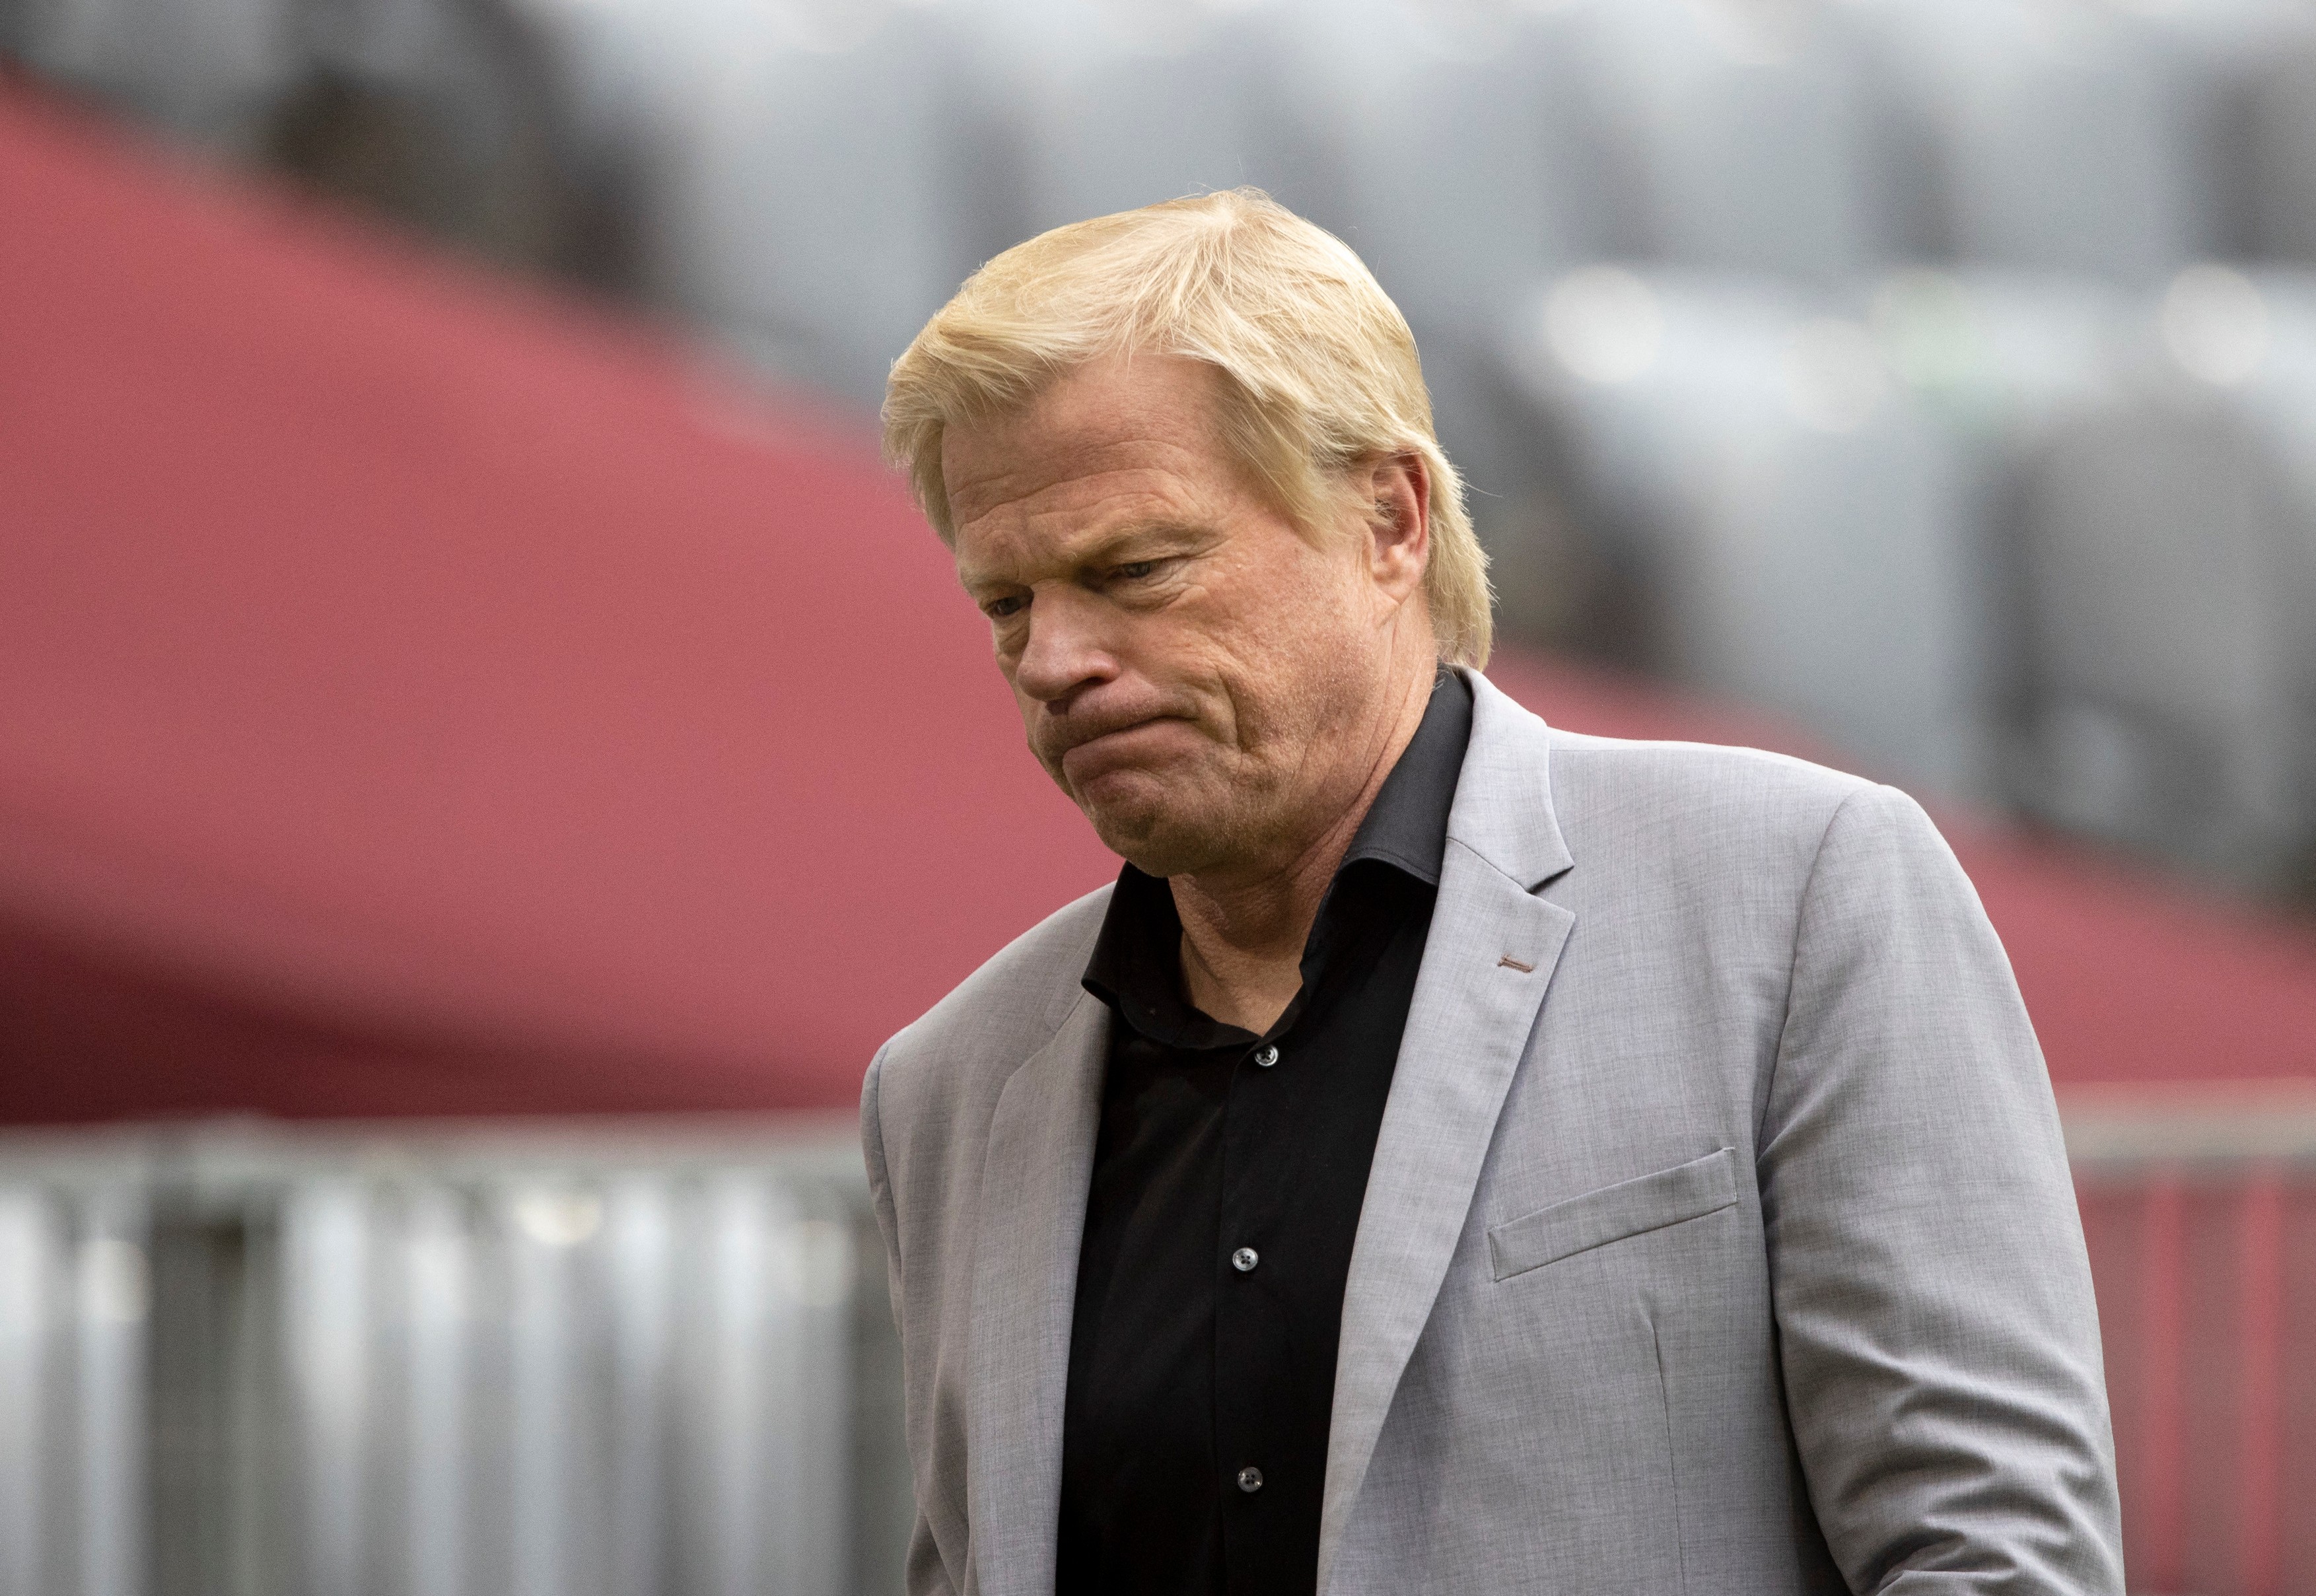 Reacția lui Oliver Kahn după ce a fost demis de la Bayern Munchen: ”Clubul mi-a interzis acest lucru!”